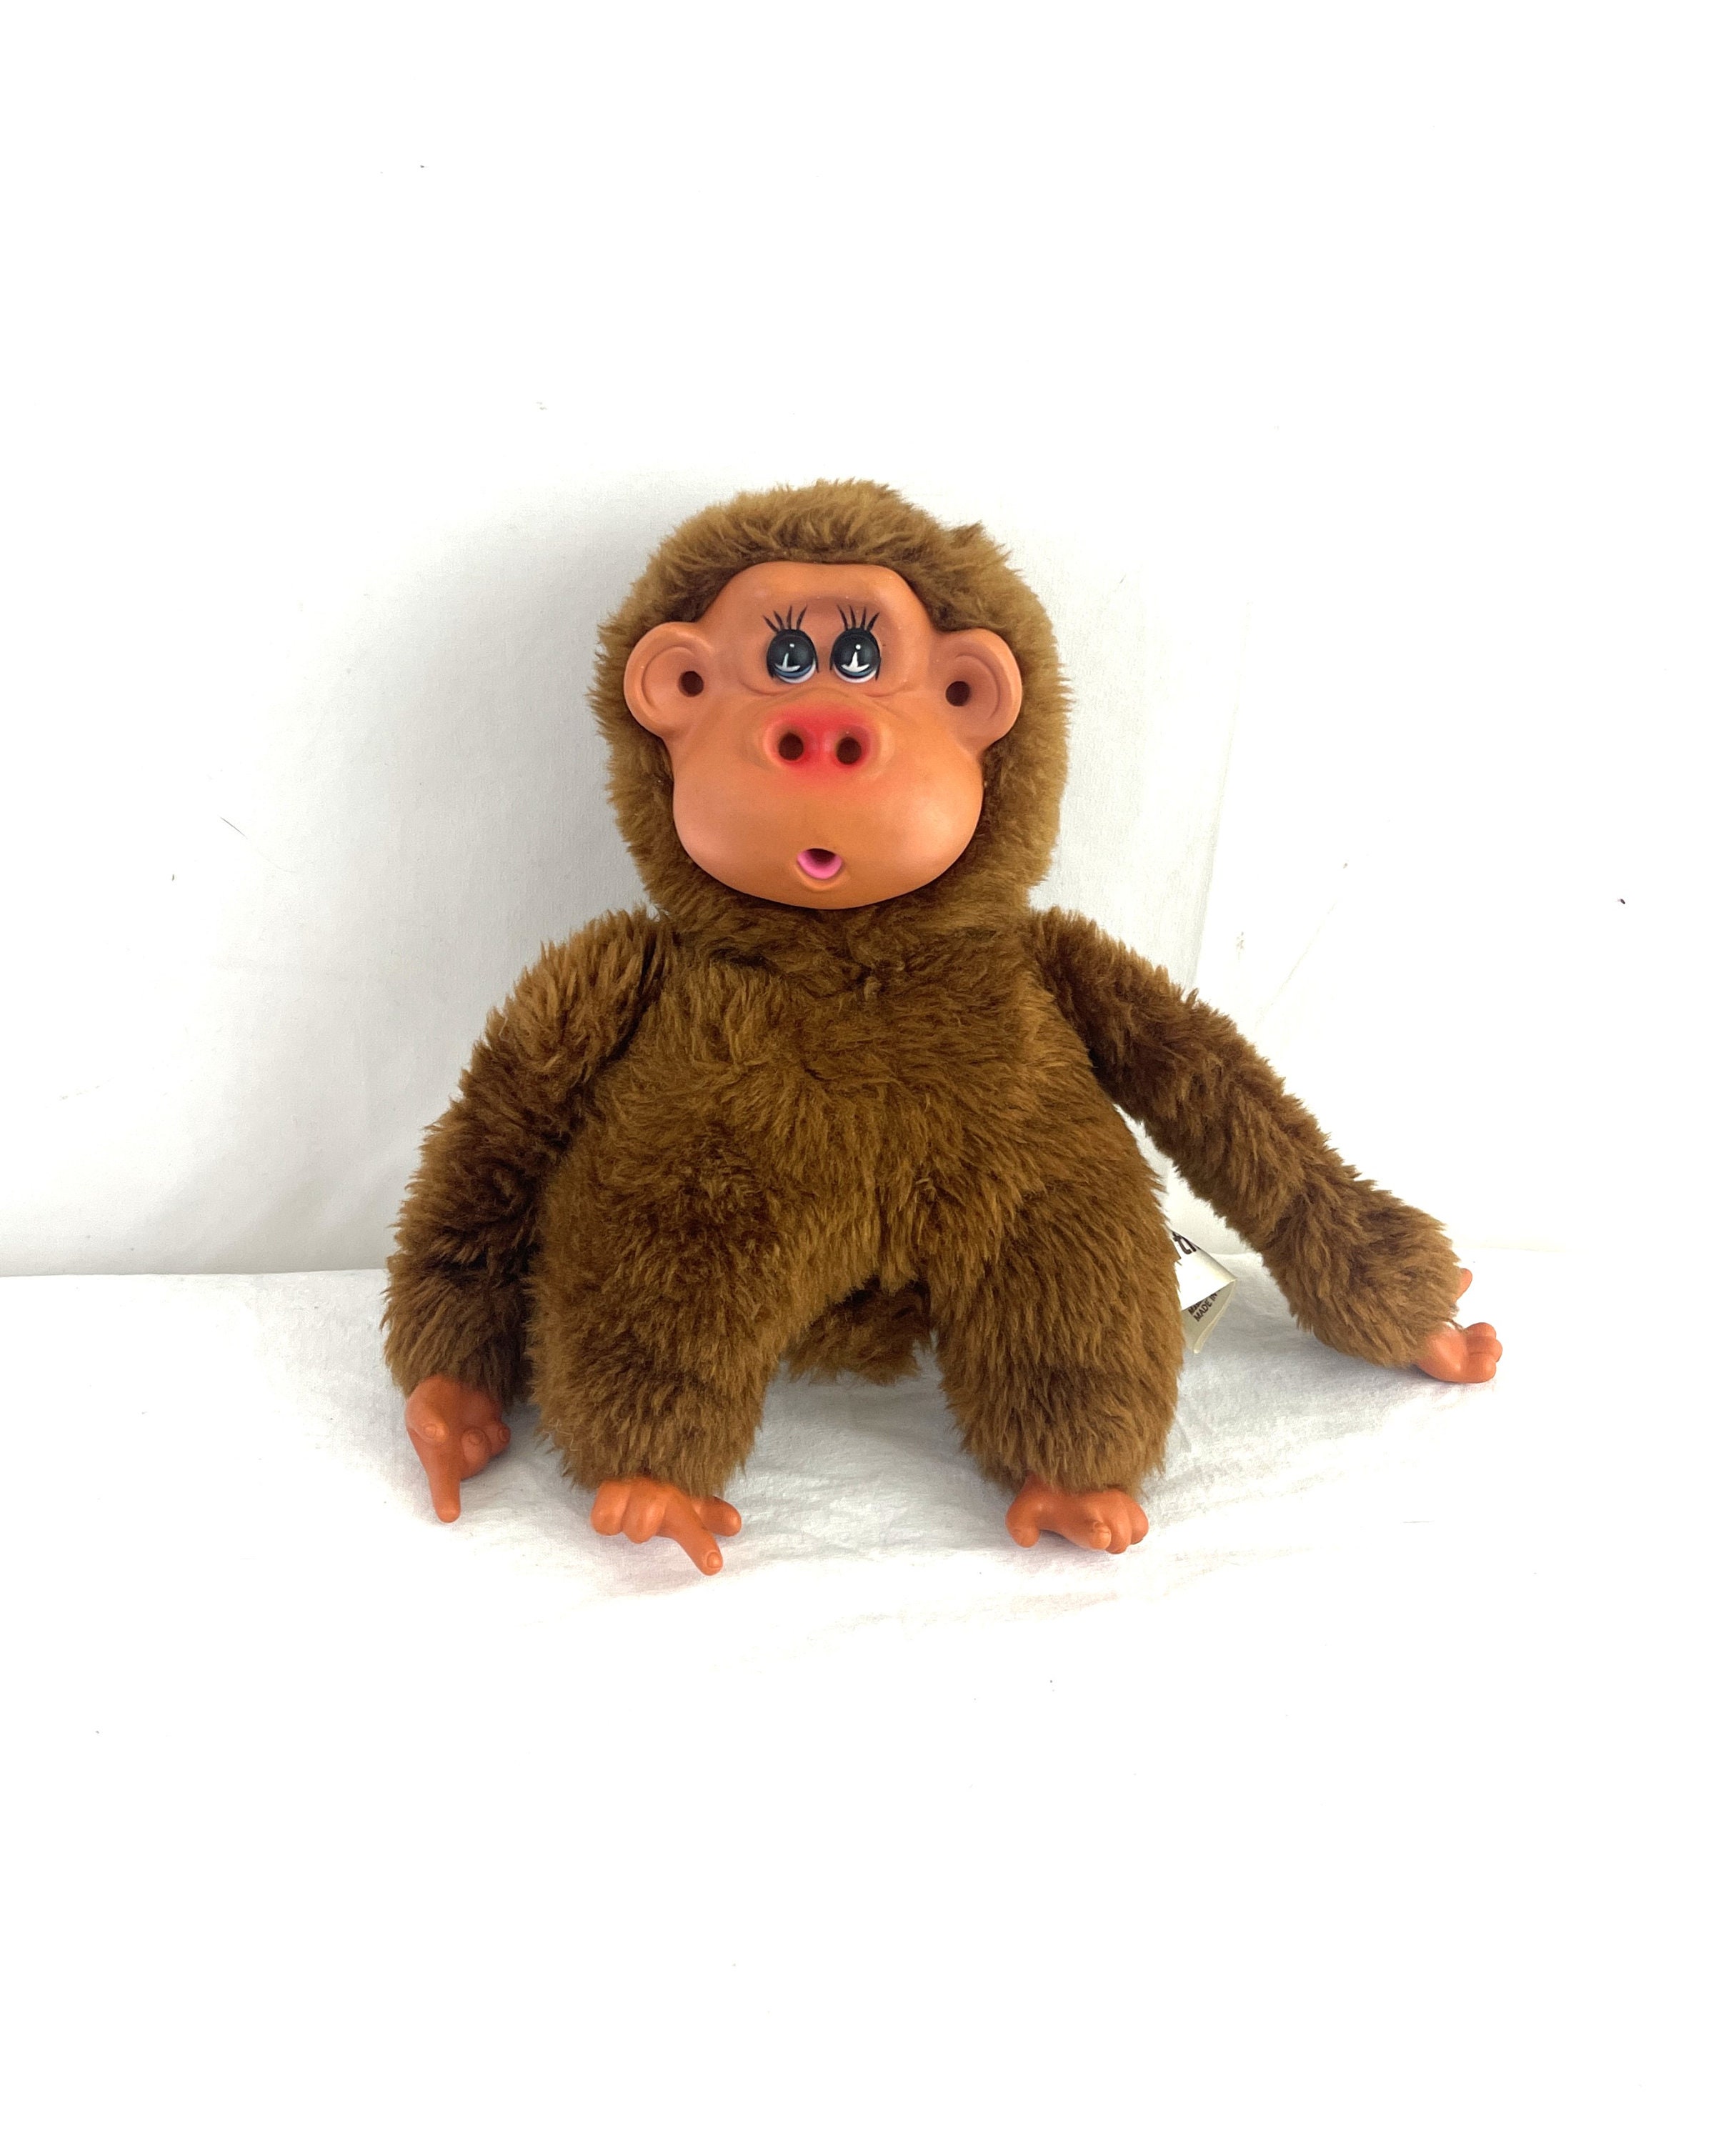 Monkey Mart Gameplay 🐵 Monkey Mart Poki Games 🐒 Parts 1 